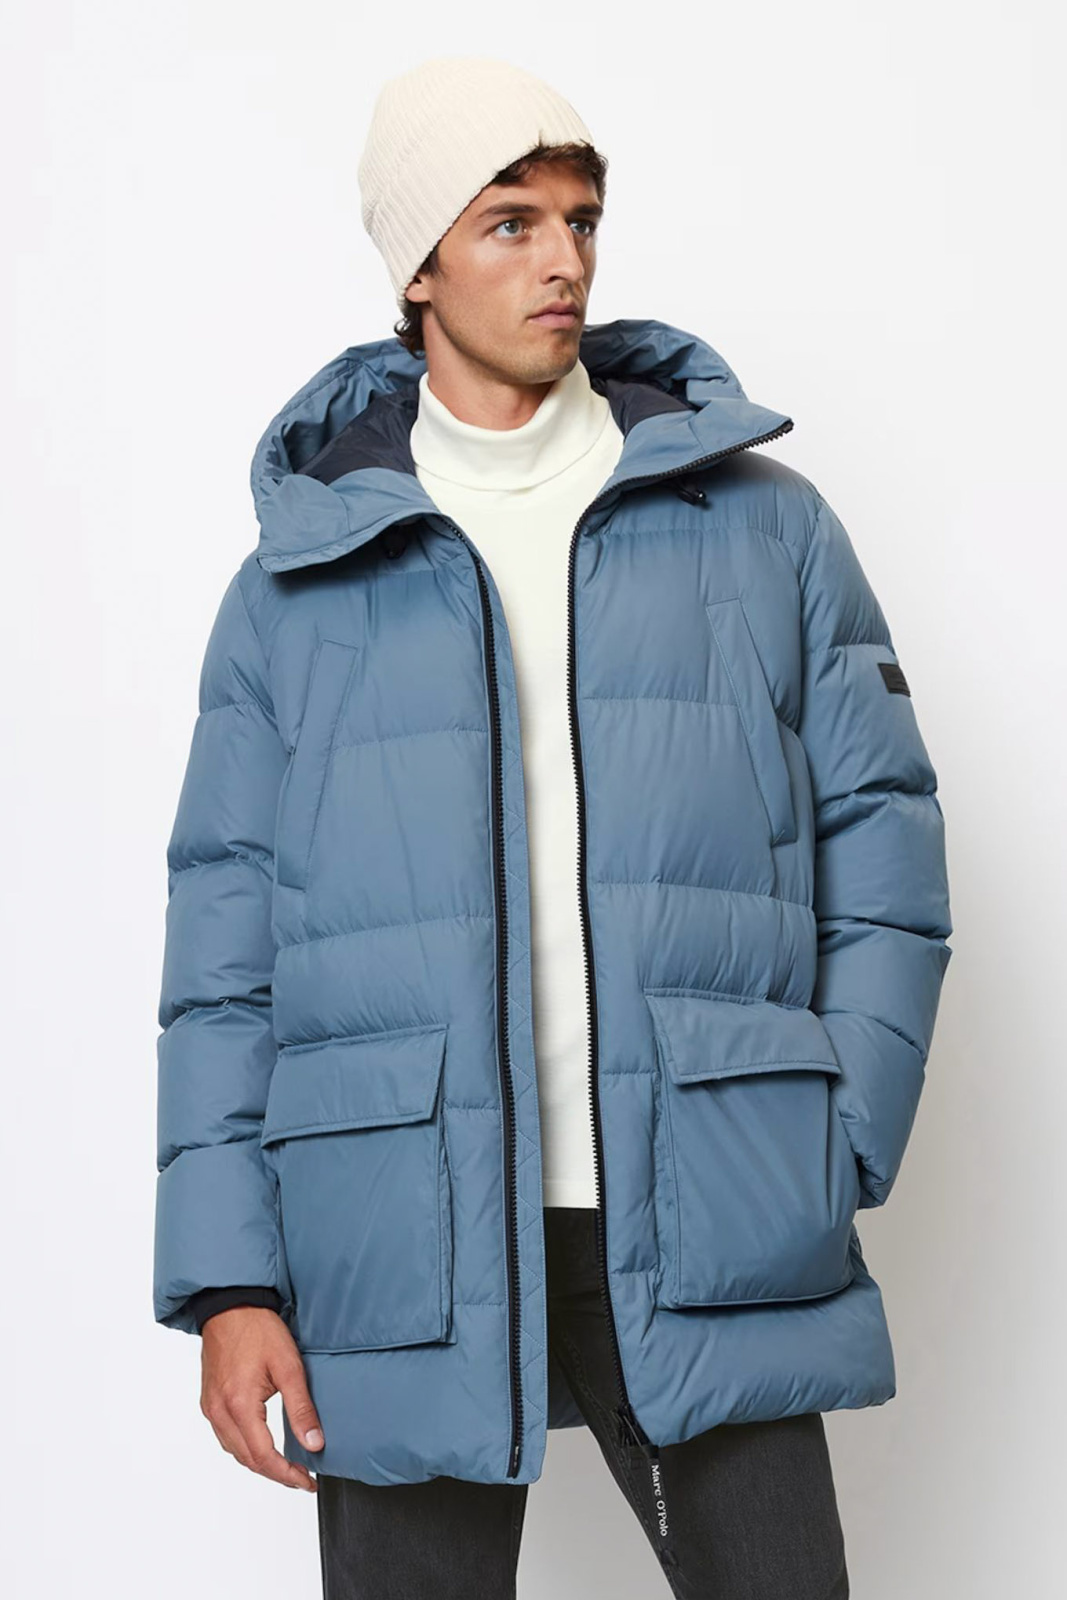 Какую мужскую куртку выбрать на зиму, чтобы было тепло и стильно